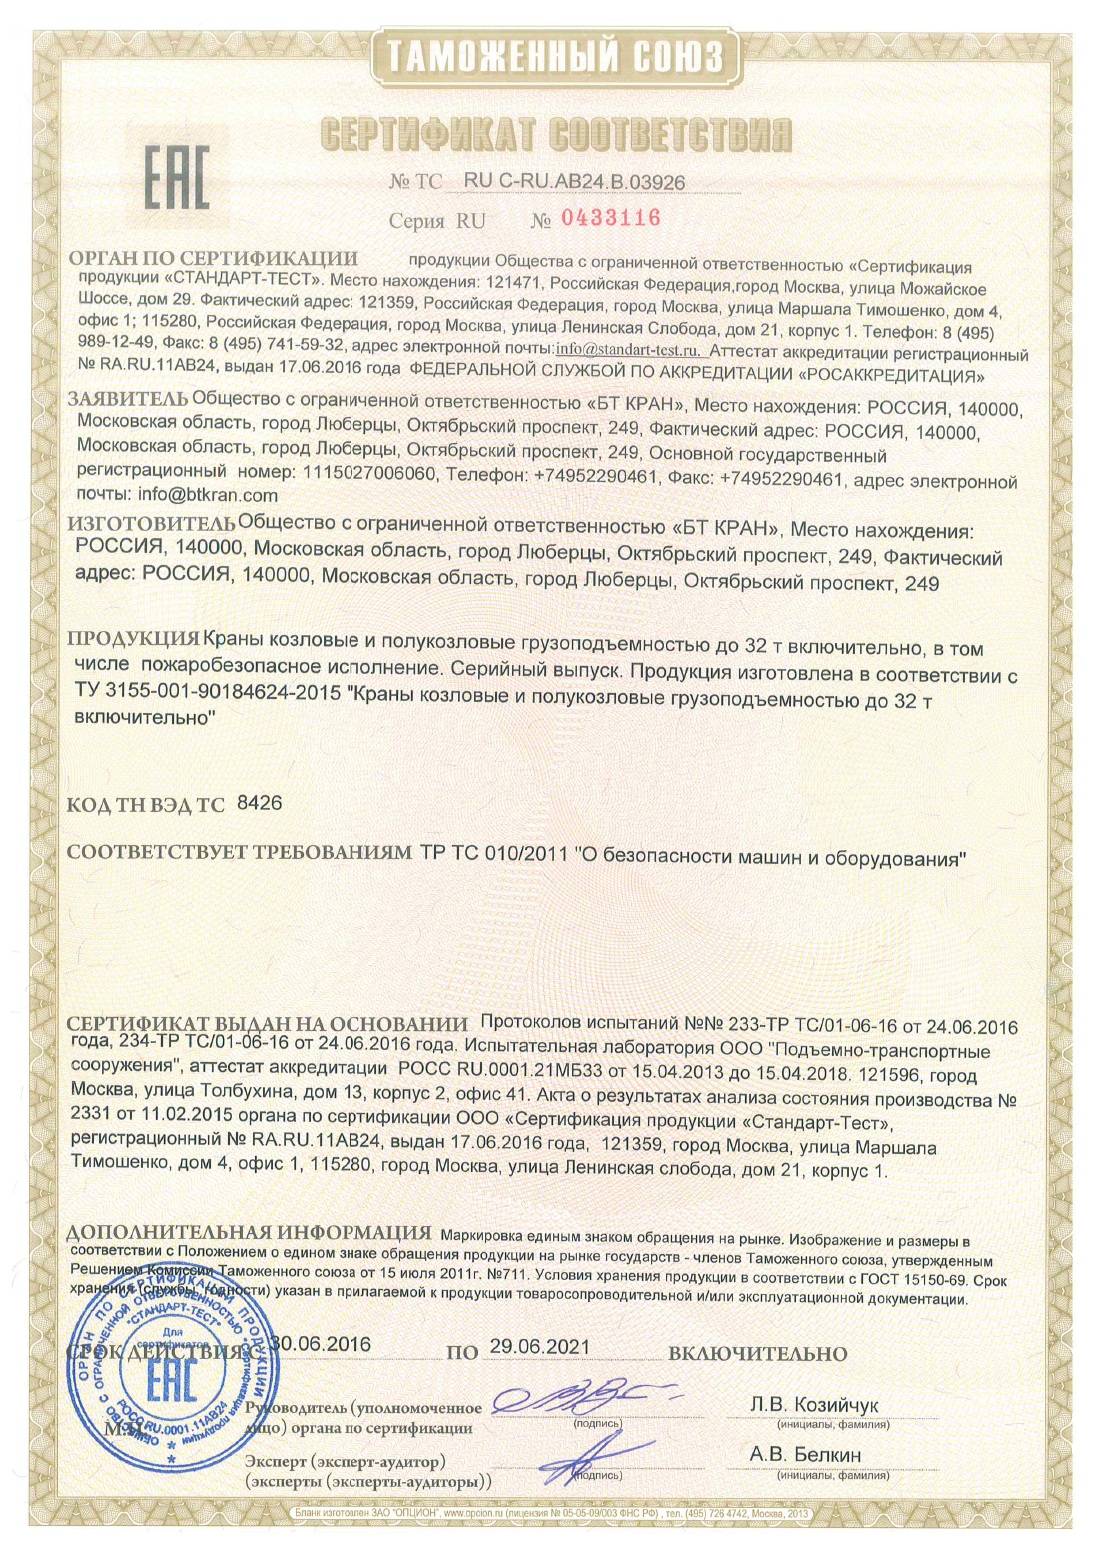 Сертификат на козловые краны до 07.2021г